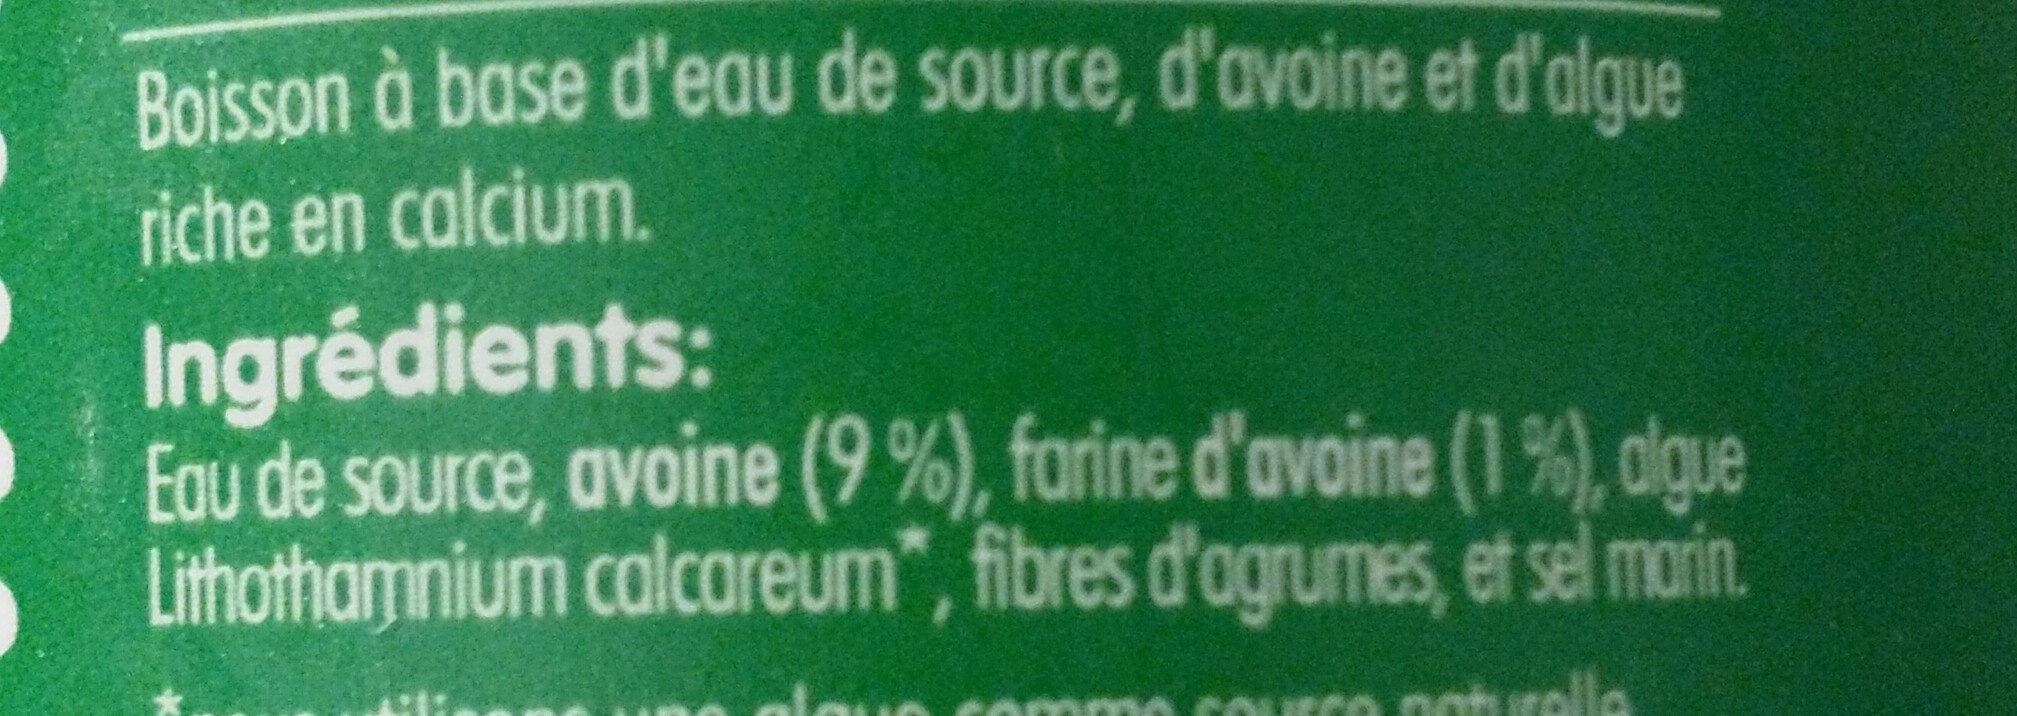 Boisson d’avoine - Ingredients - fr